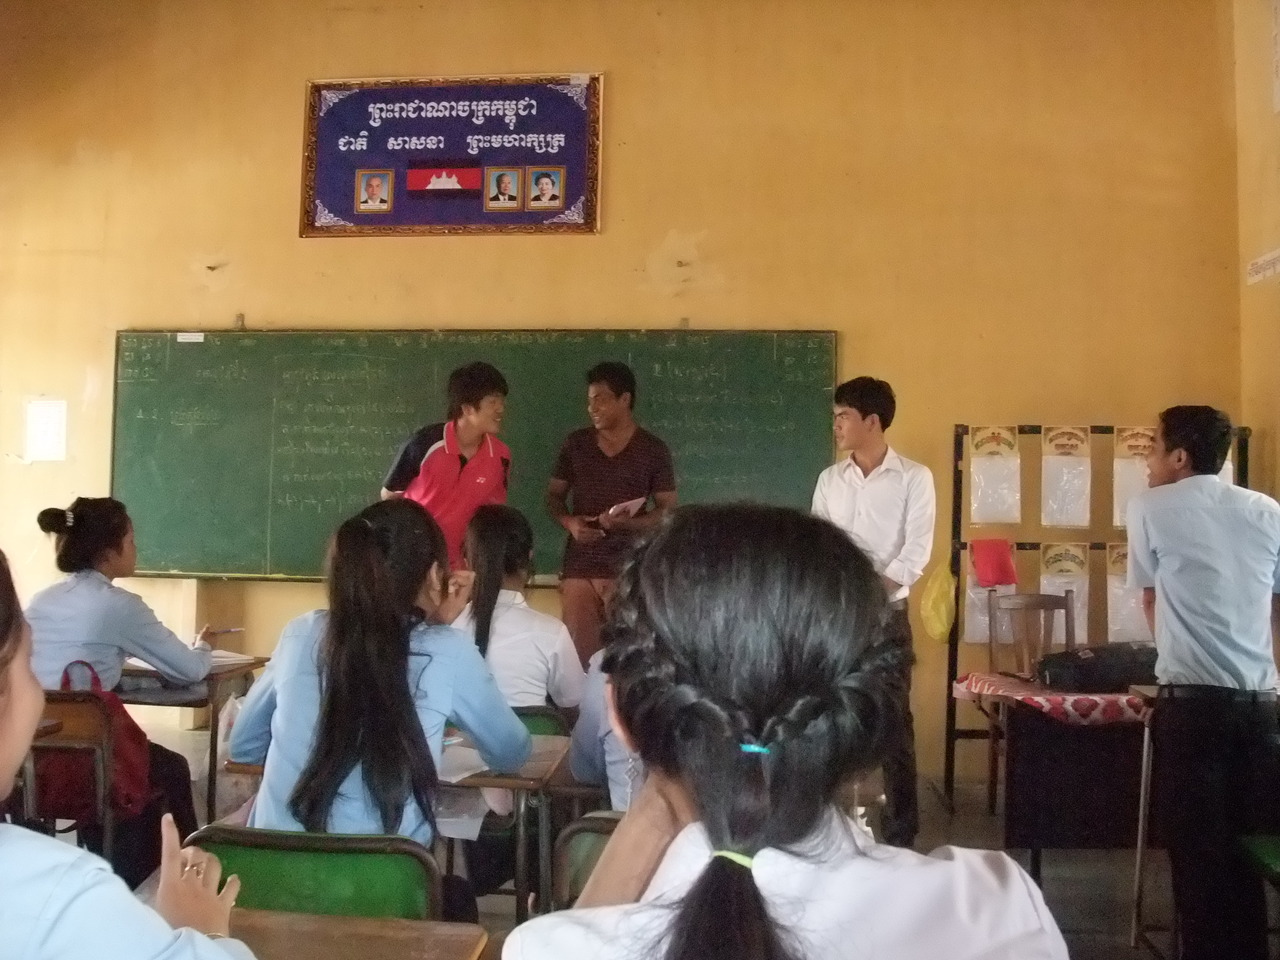 カンボジア人に伝わるように通訳と一緒に授業をする様子